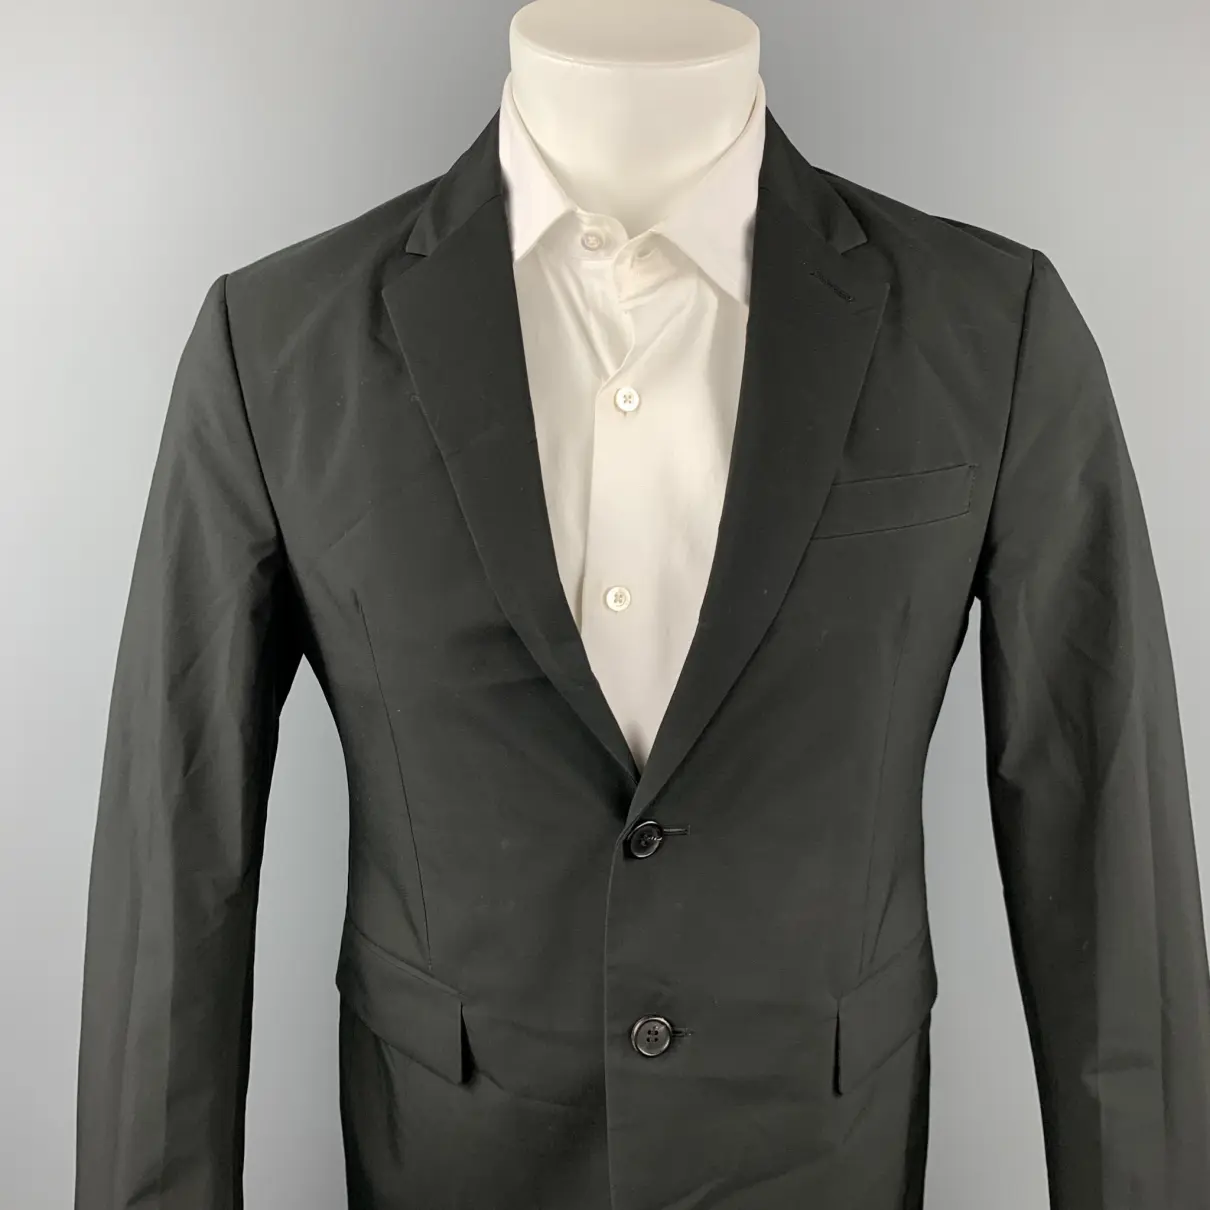 Buy Prada Suit online